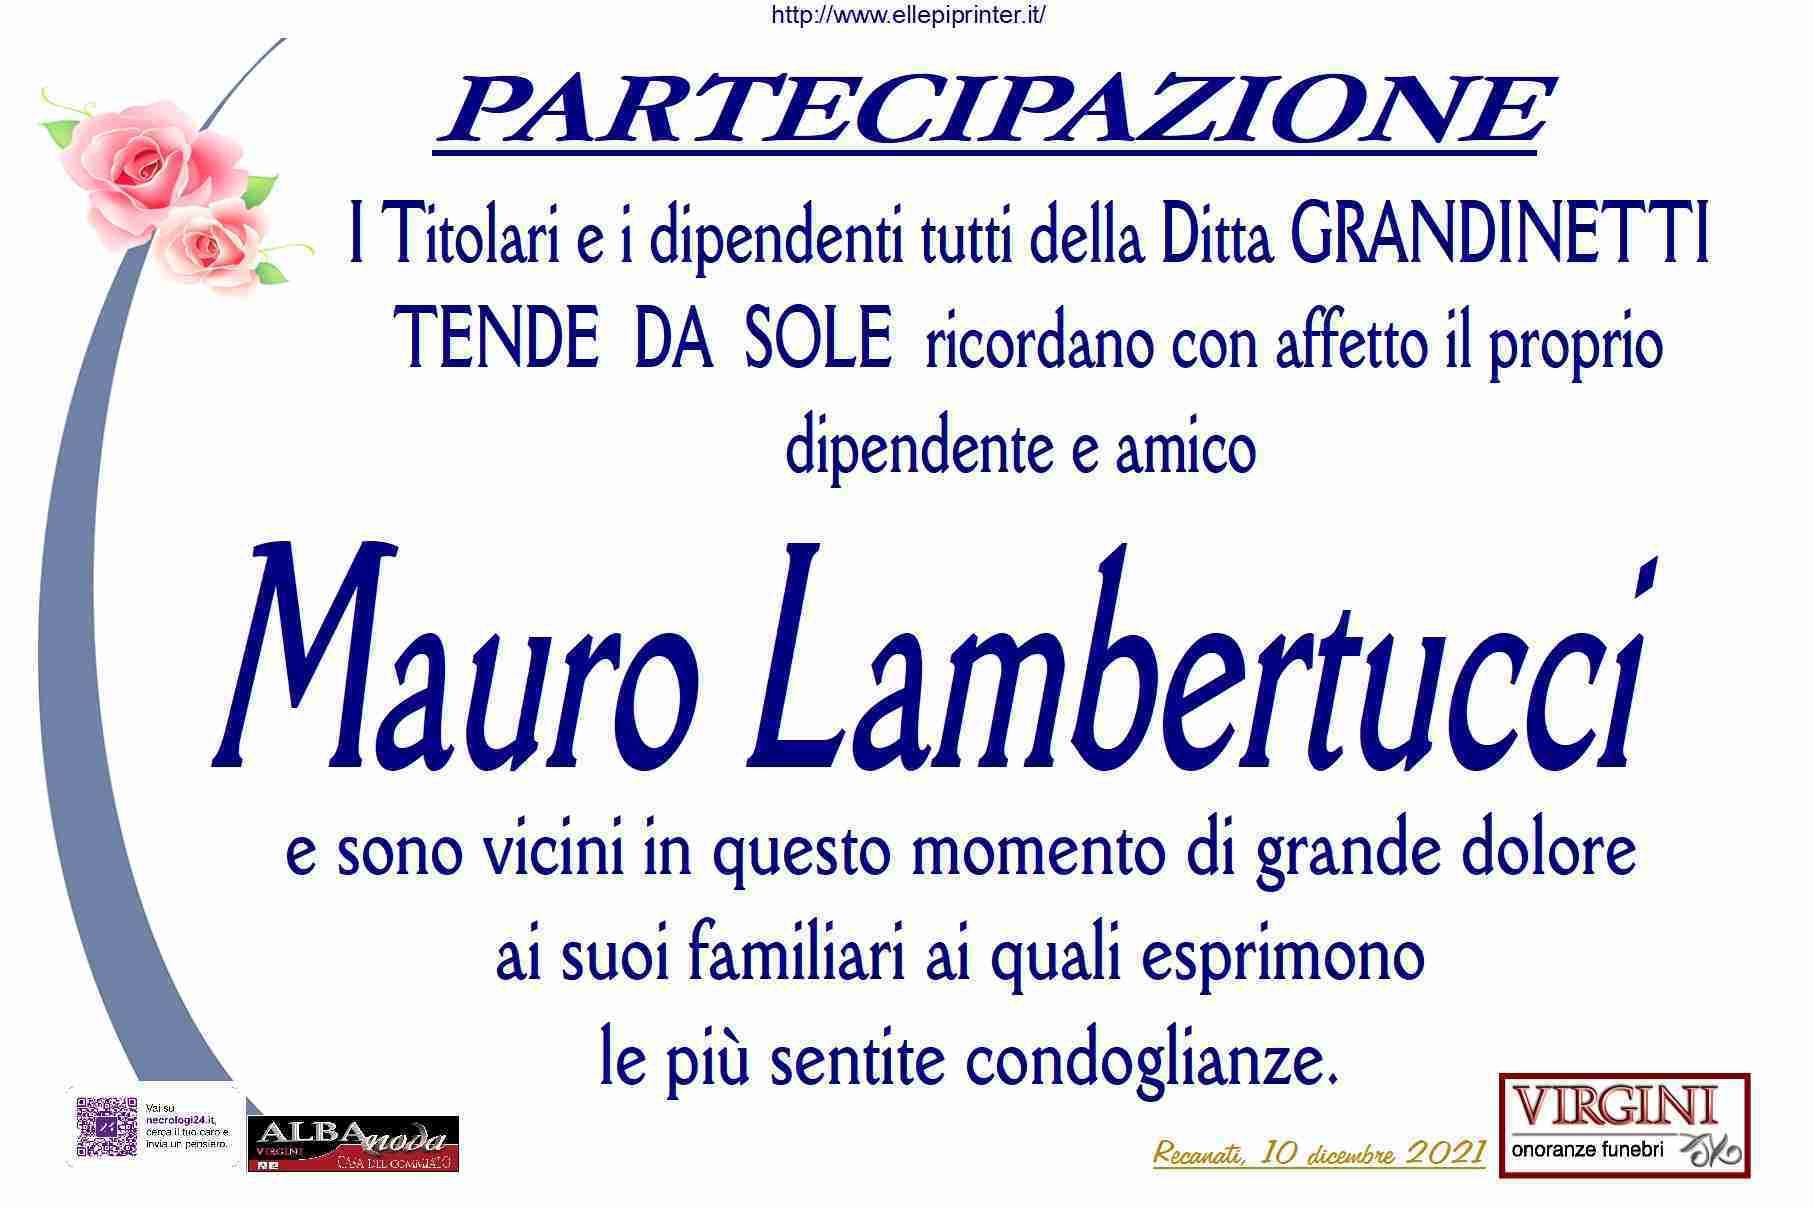 Mauro Lambertucci